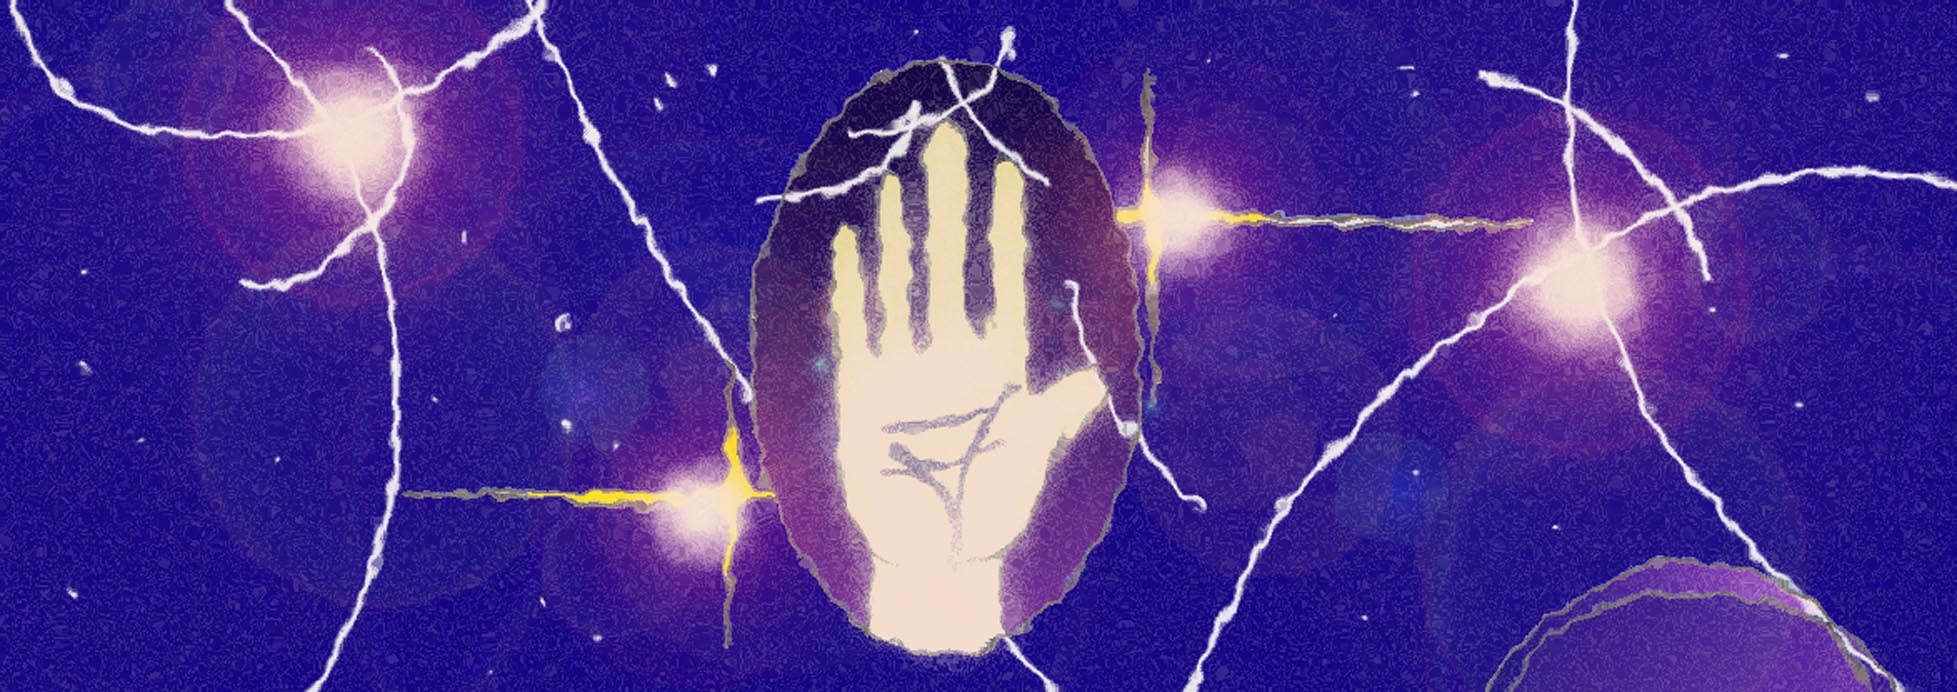 Immagine del palmo di una mano. (Per leggerne la descrizione proseguire nel link). Si vede al centro il palmo di una mano tra punti di luce.